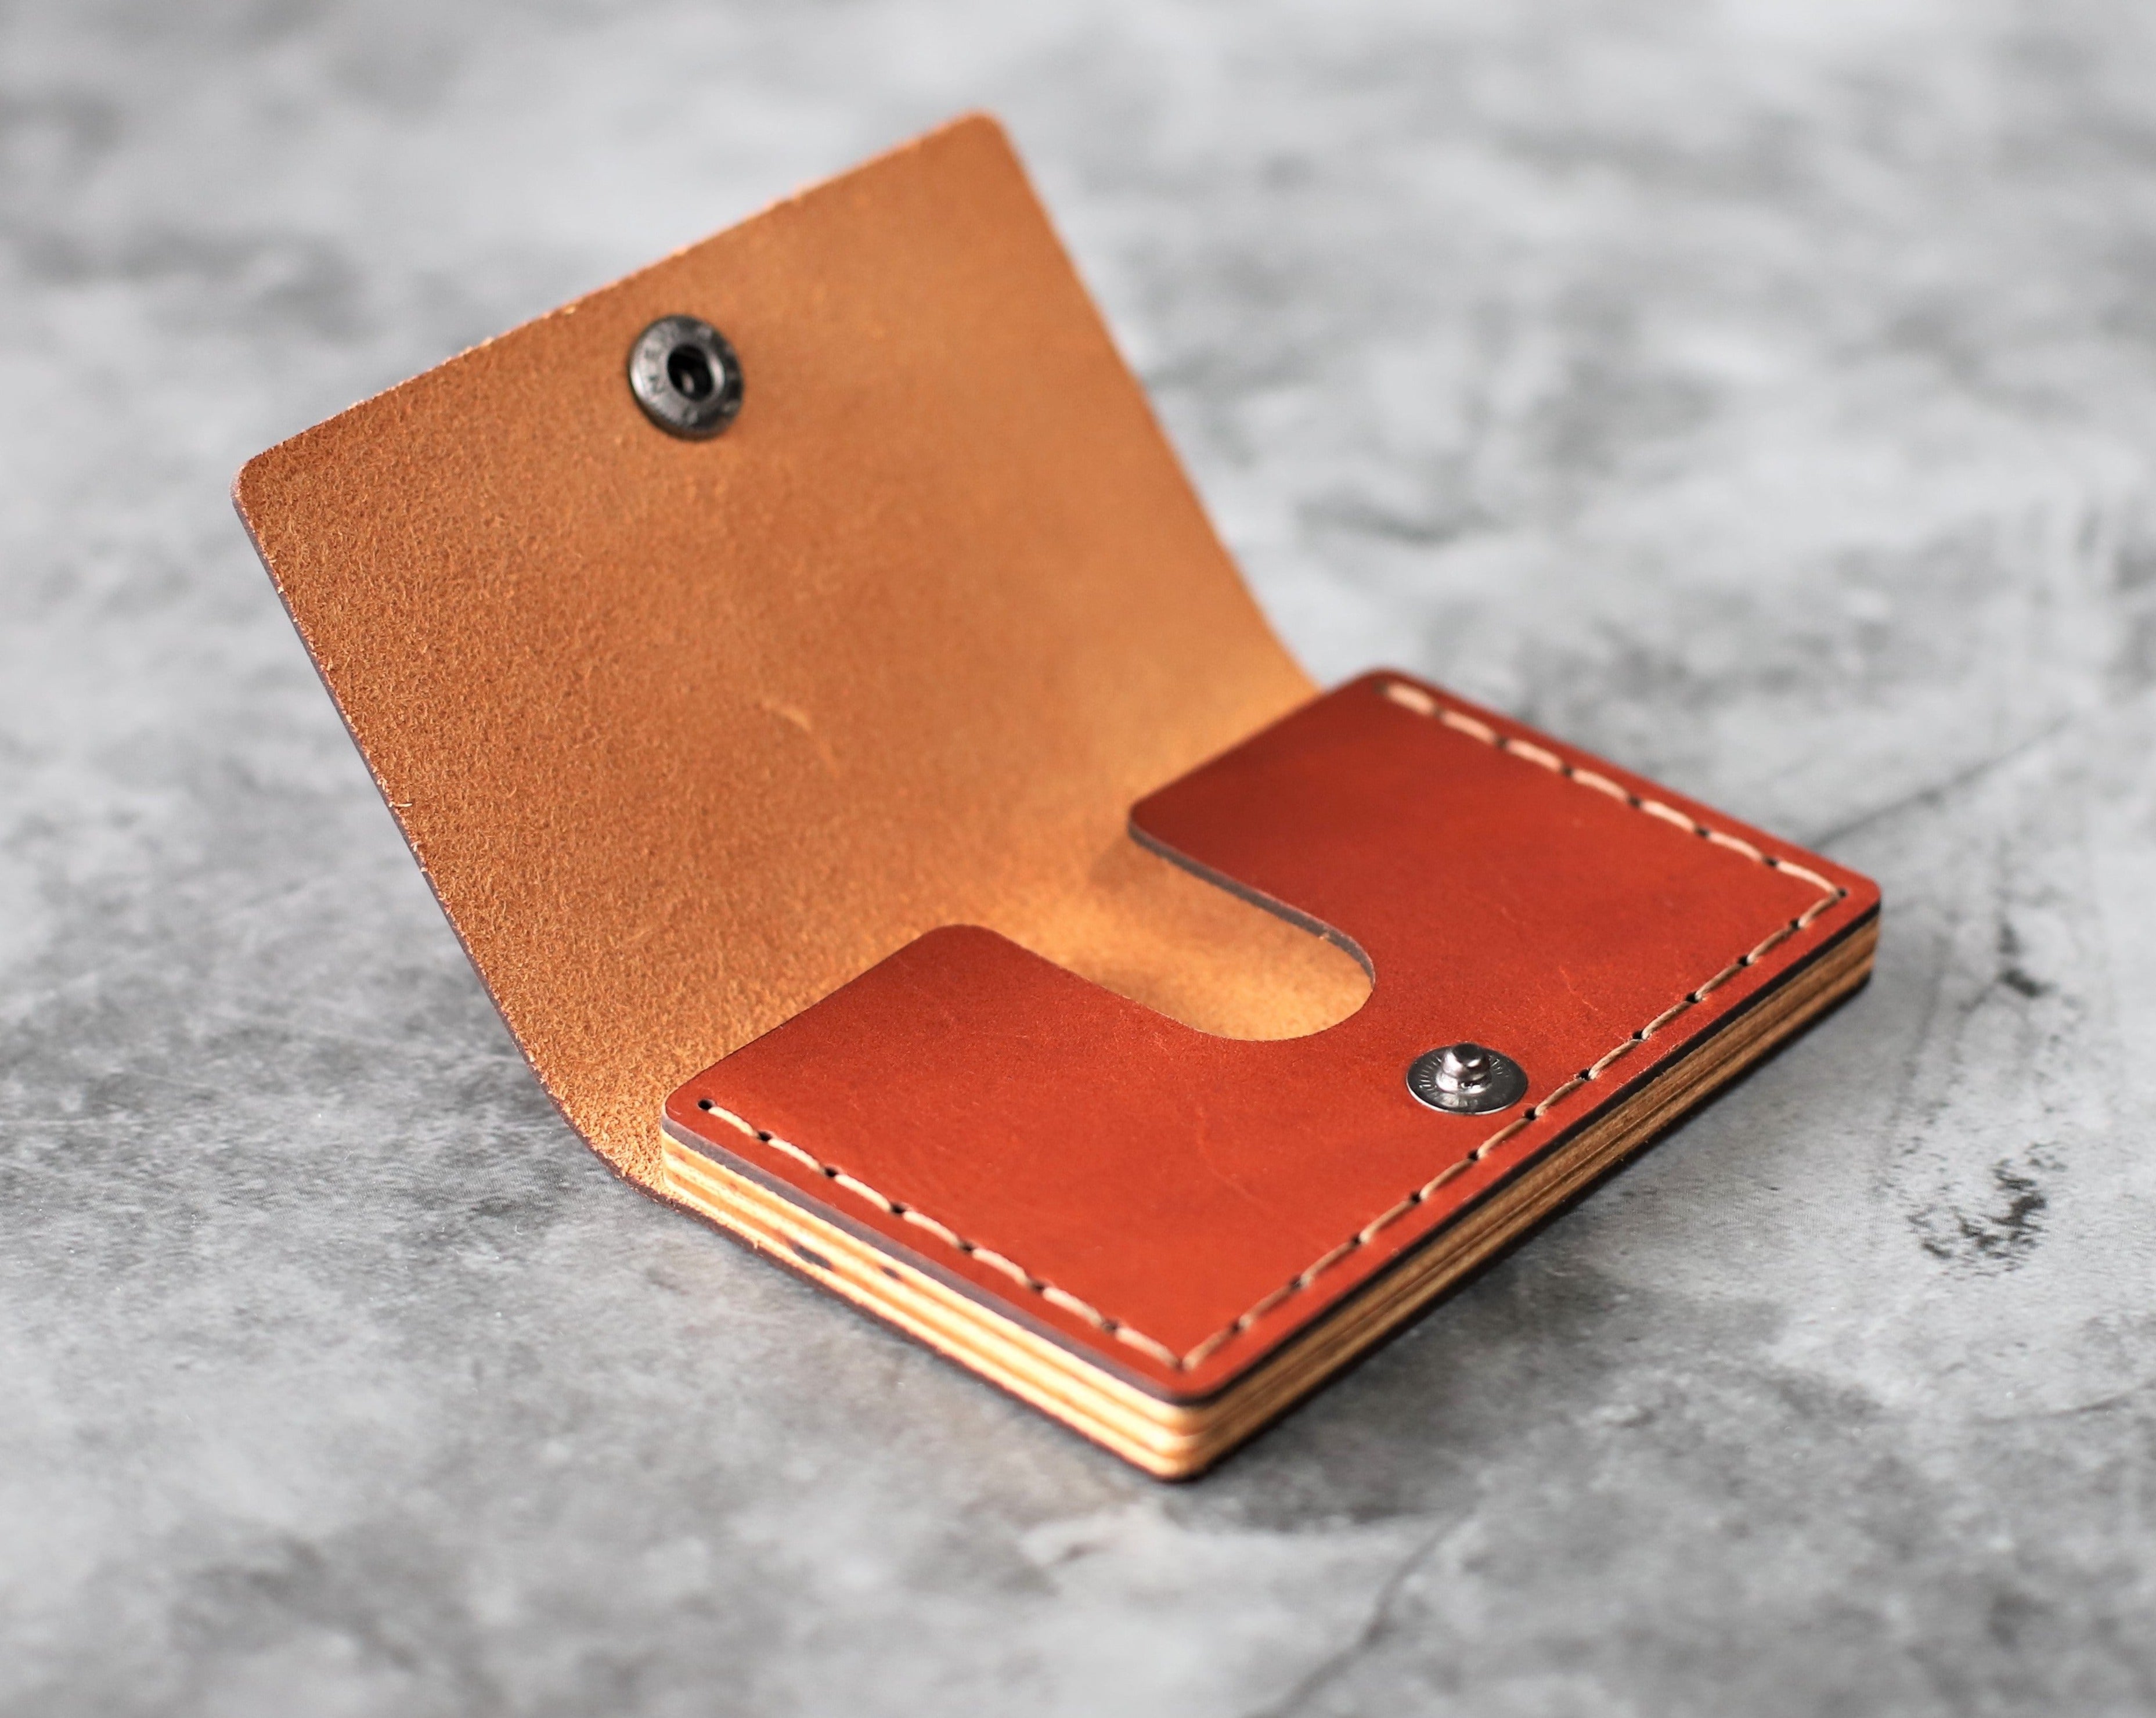 Business card holder - Orange leather business card holder